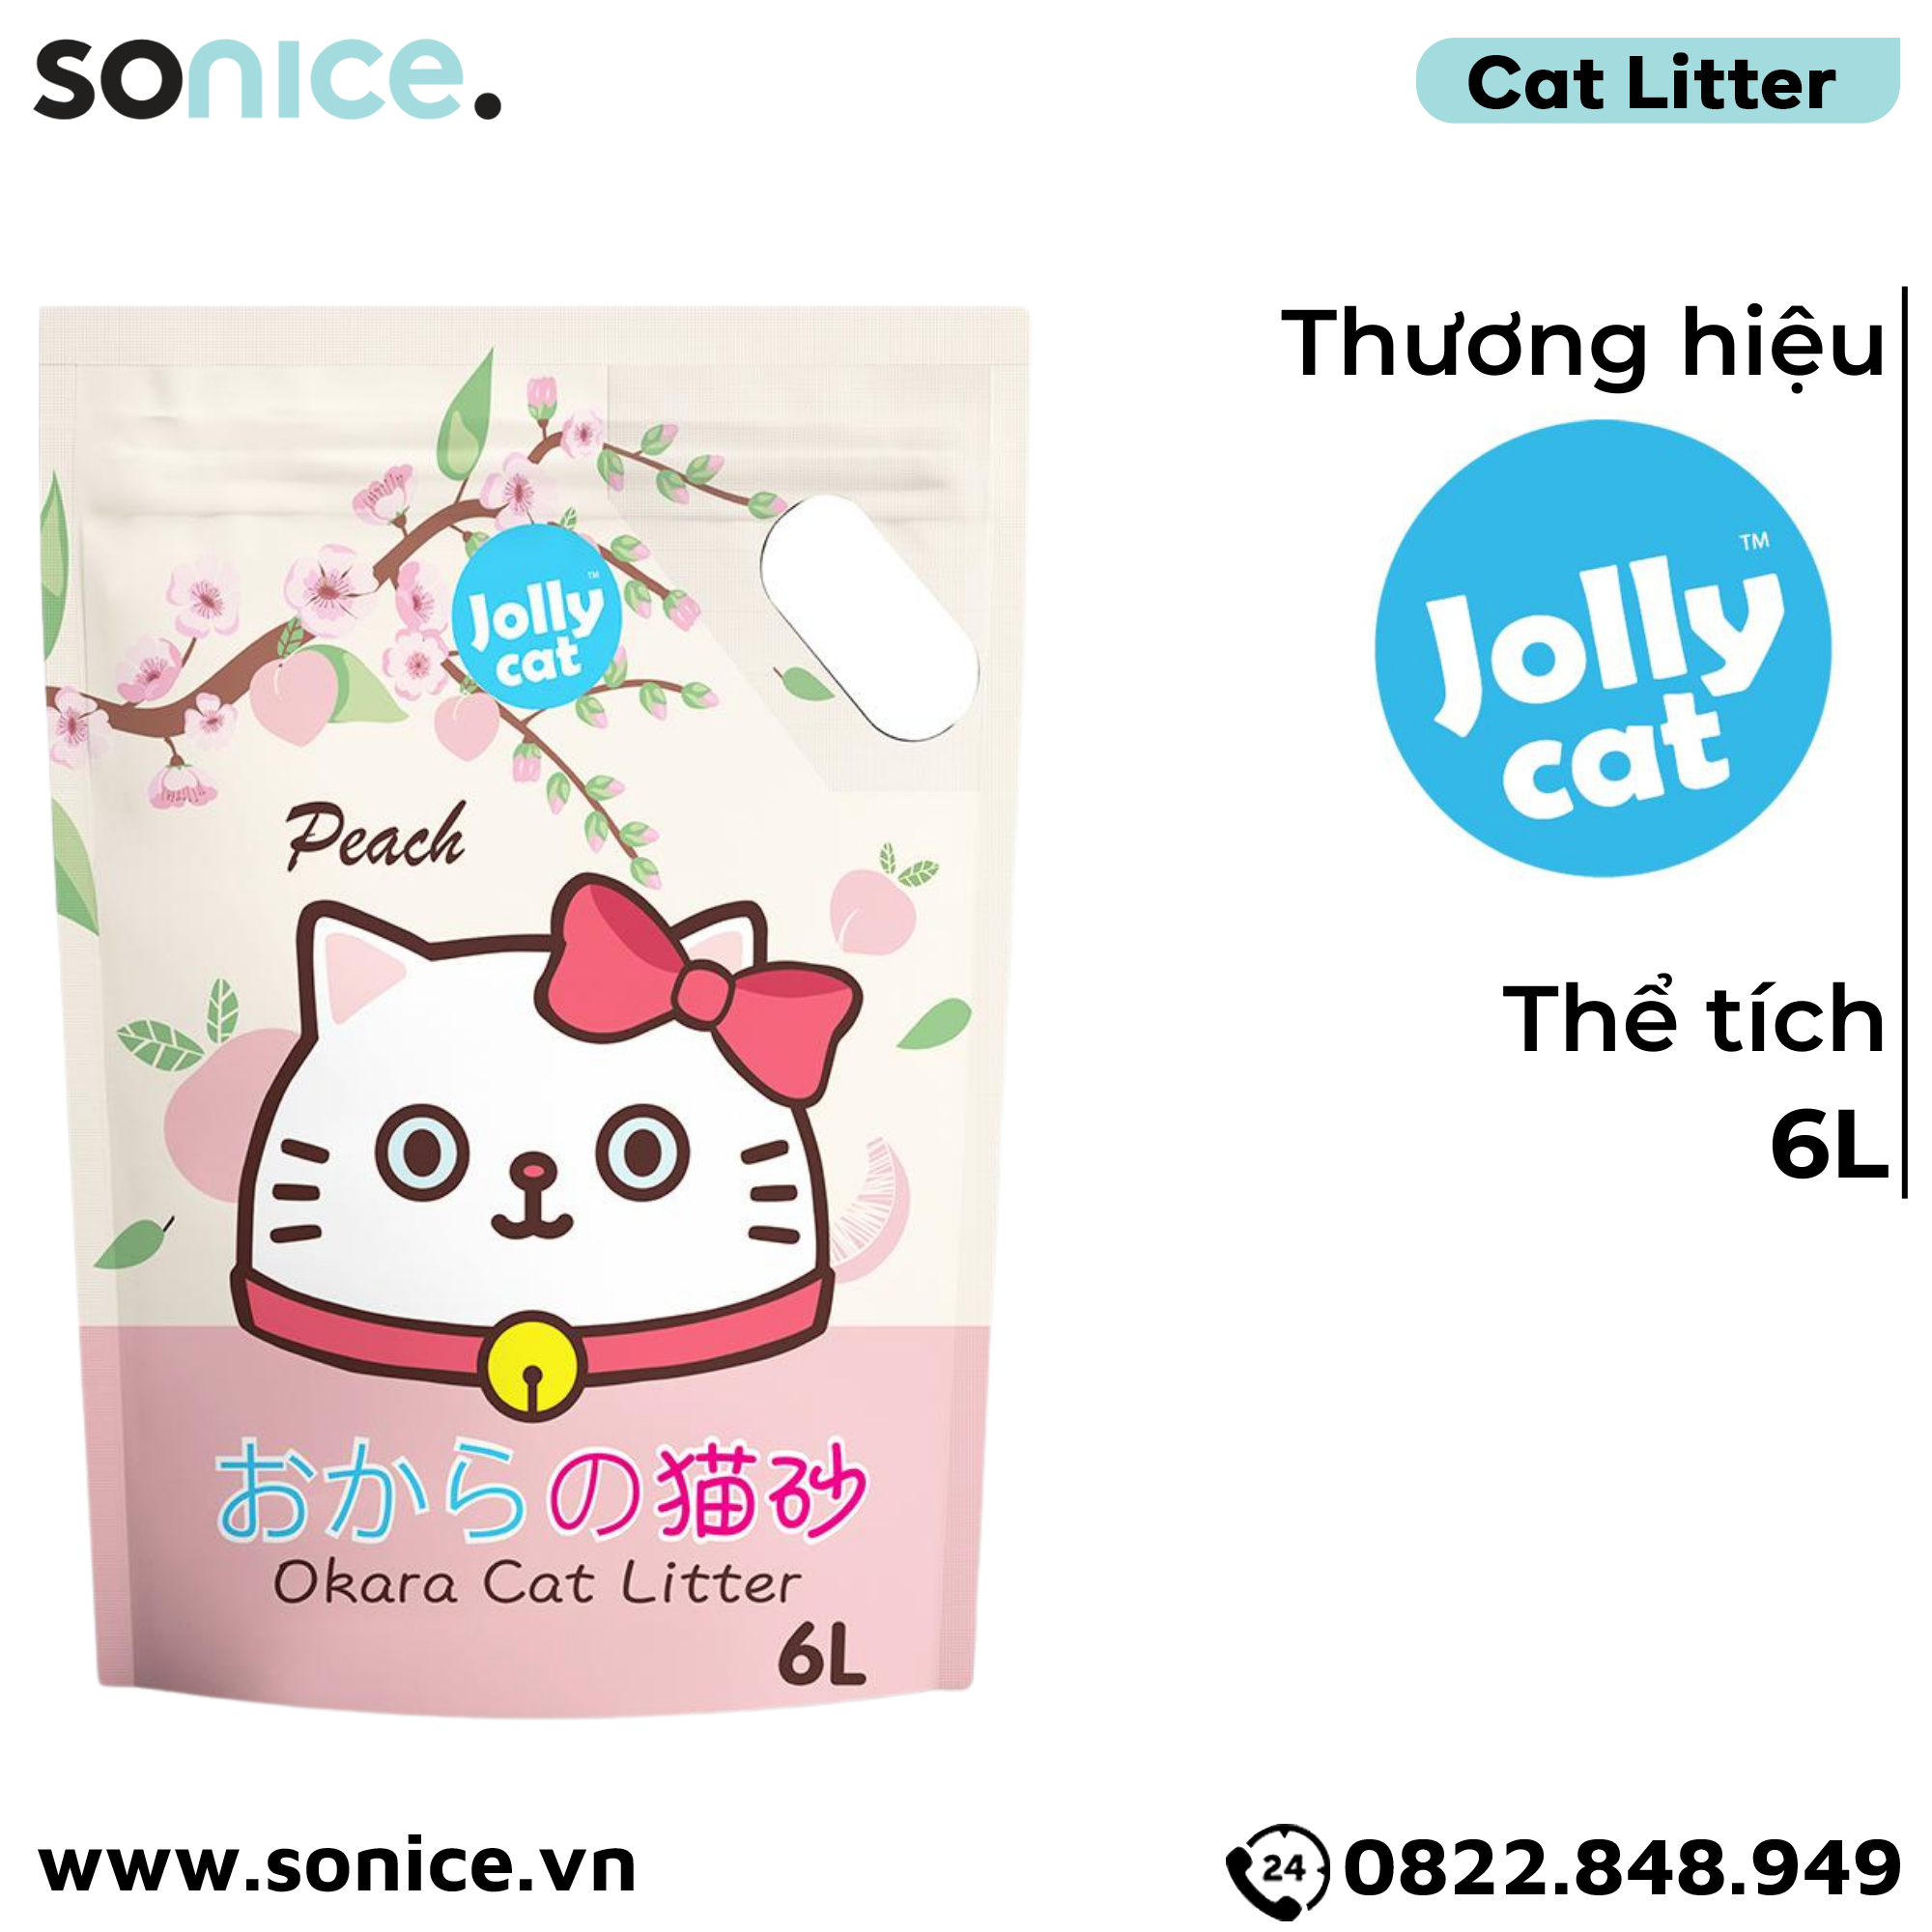  Cát vệ sinh Premium Tofu Jolly Cat Litter Peach 6L - Làm từ đậu nành soya hương đào SONICE. 